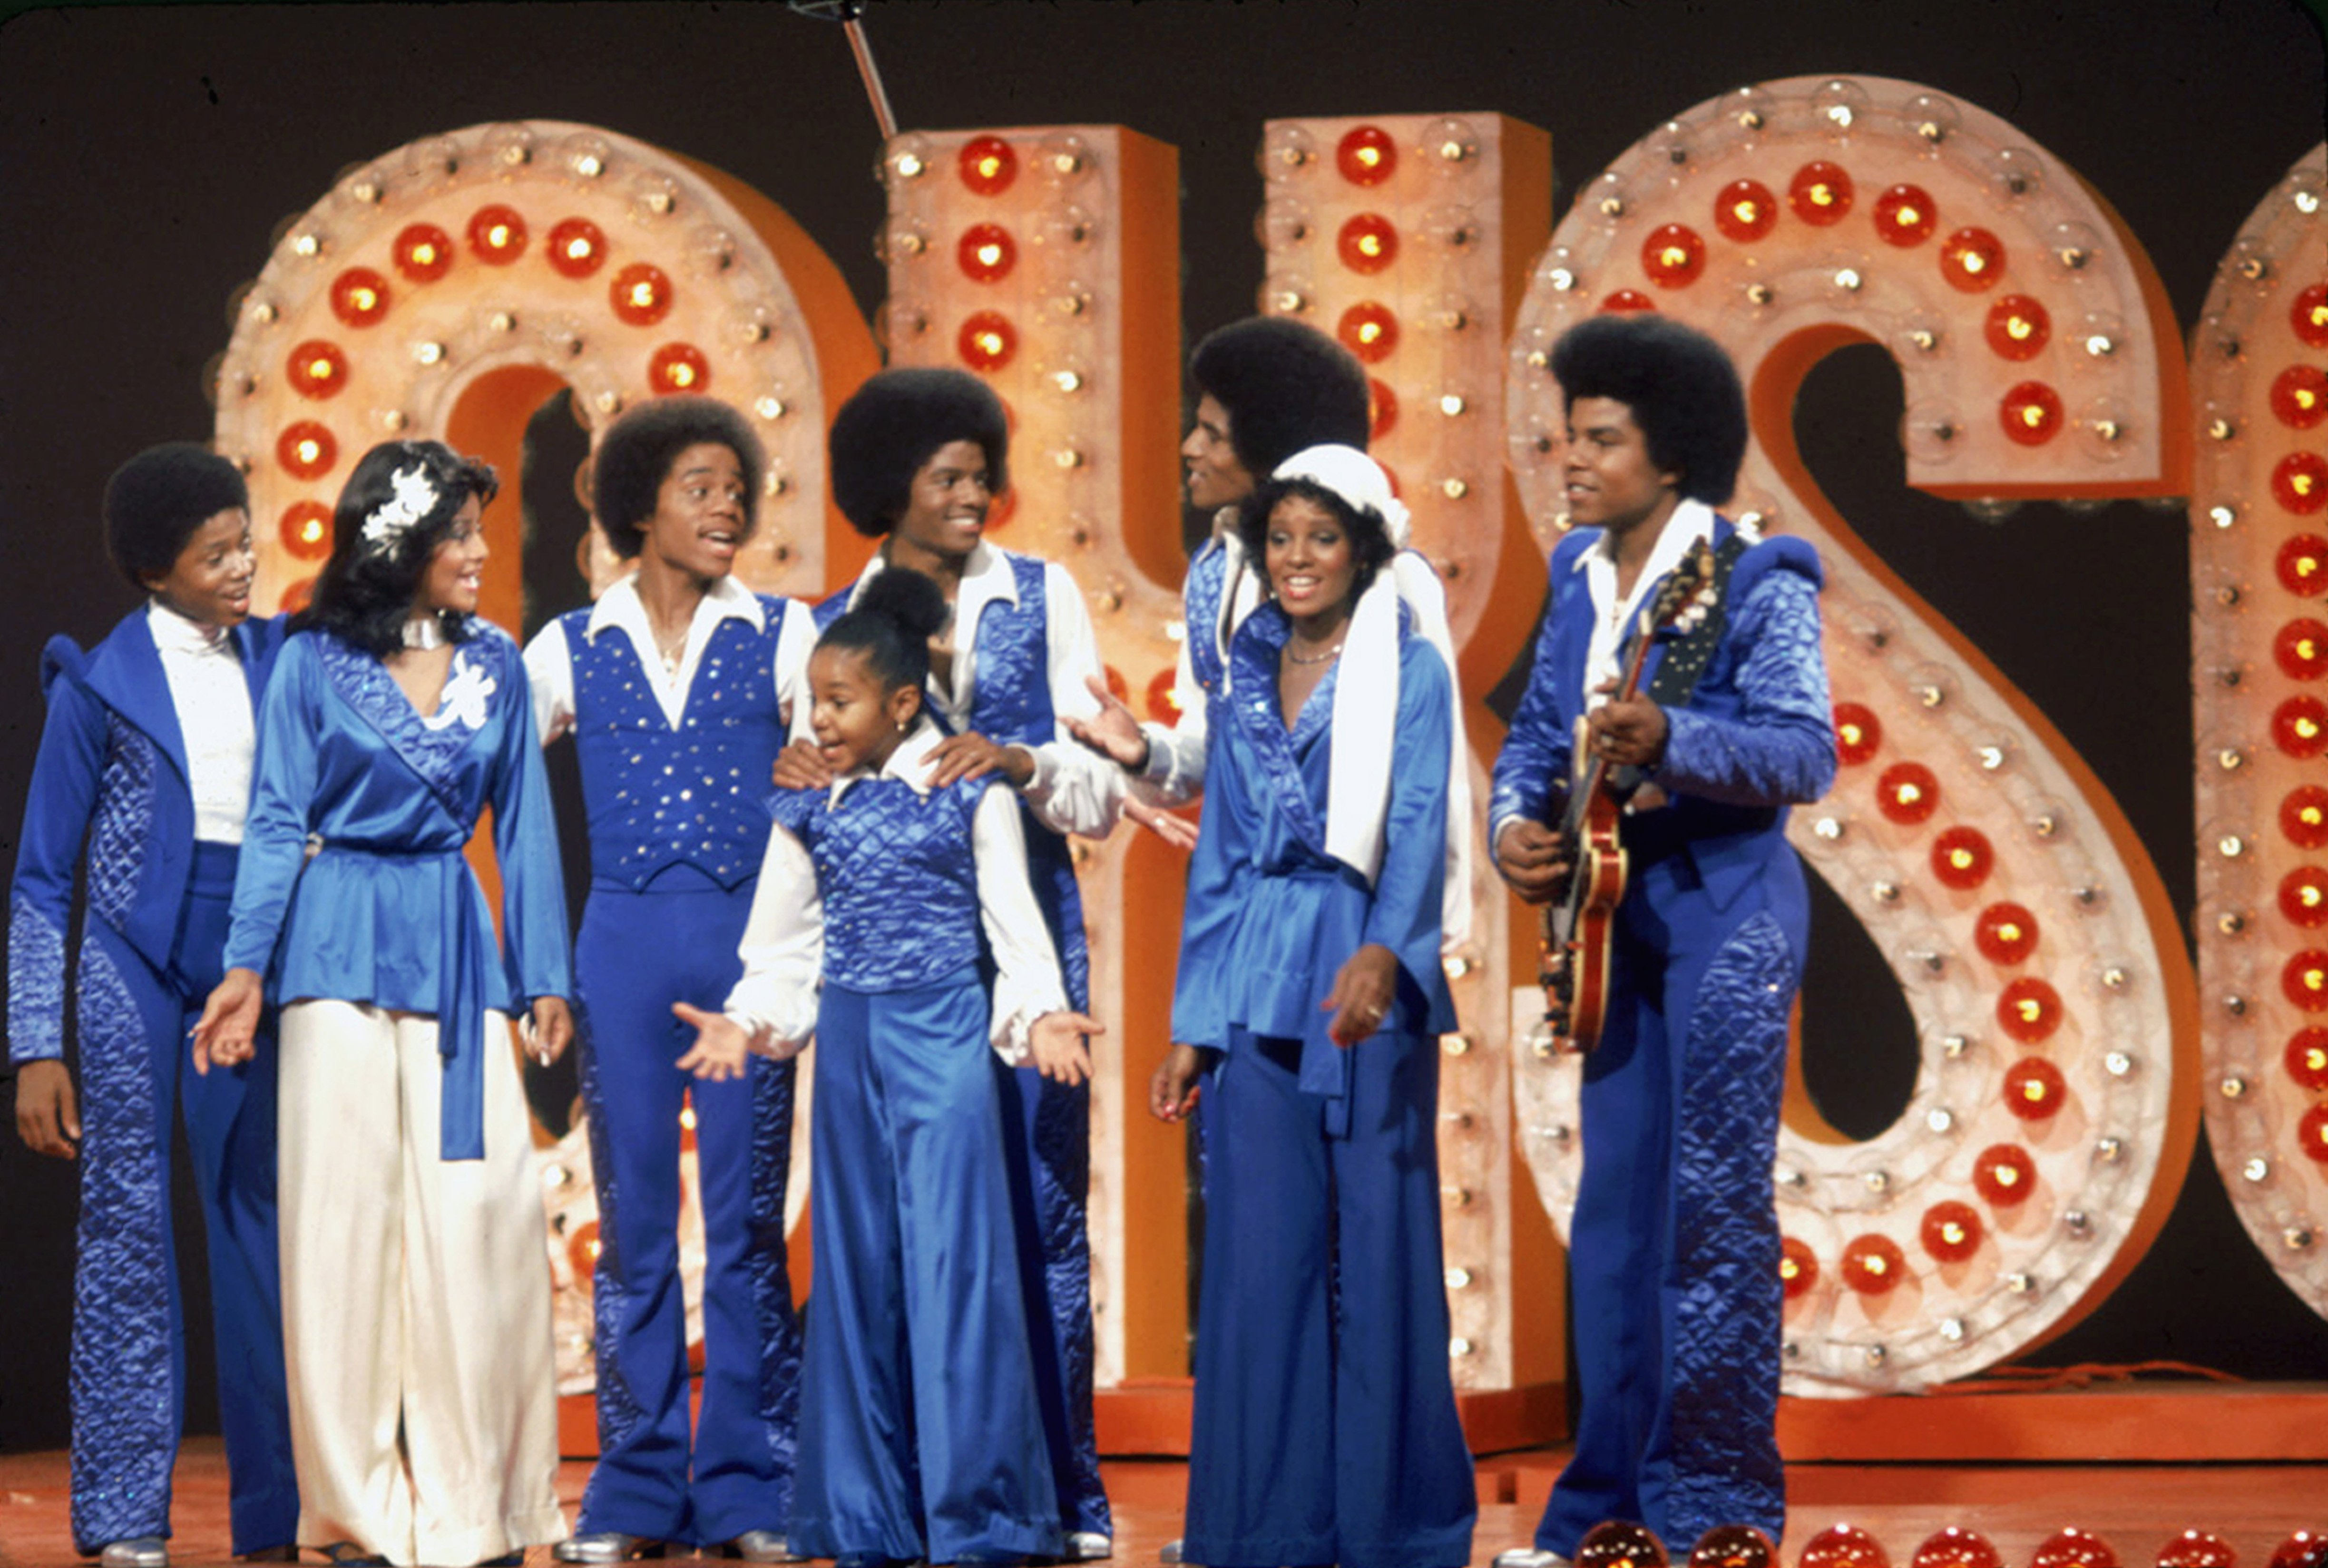 La familia Jackson se presenta en un espectáculo televisivo en los estudios Burbank, California, noviembre de 1976. De izquierda a derecha: Randy, La Toya, Marlon, Janet, Michael (1958 - 2009), Jackie, Rebbie y Tito. | Foto: Getty Images